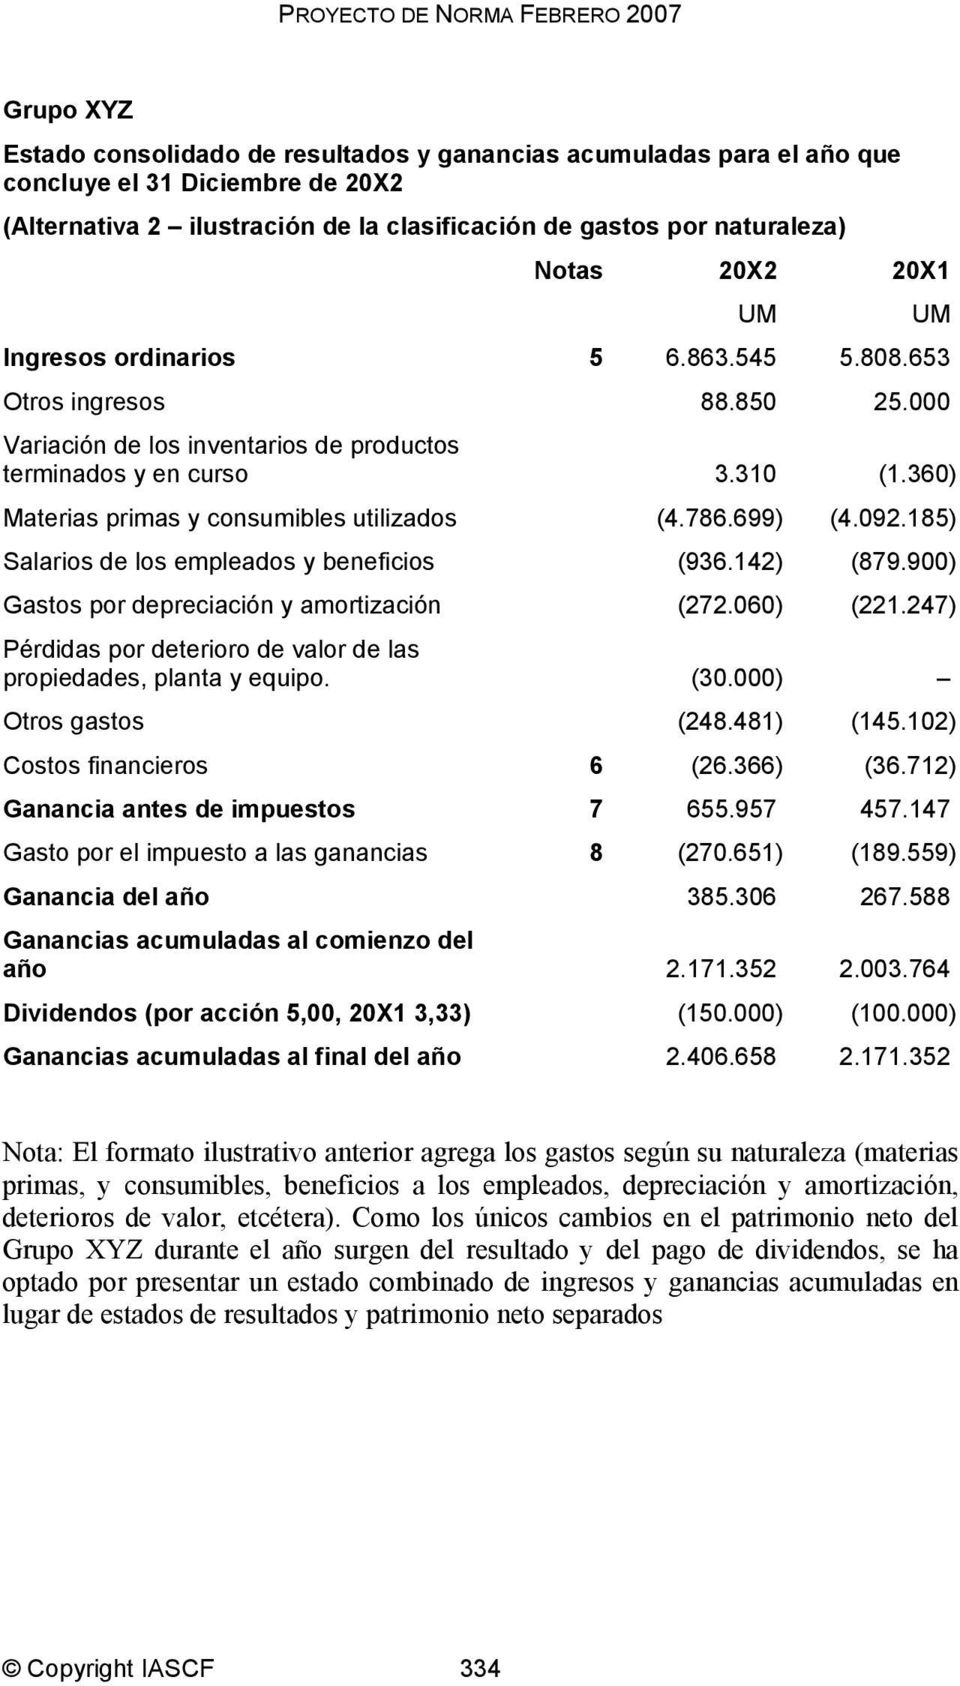 360) Materias primas y consumibles utilizados (4.786.699) (4.092.185) Salarios de los empleados y beneficios (936.142) (879.900) Gastos por depreciación y amortización (272.060) (221.